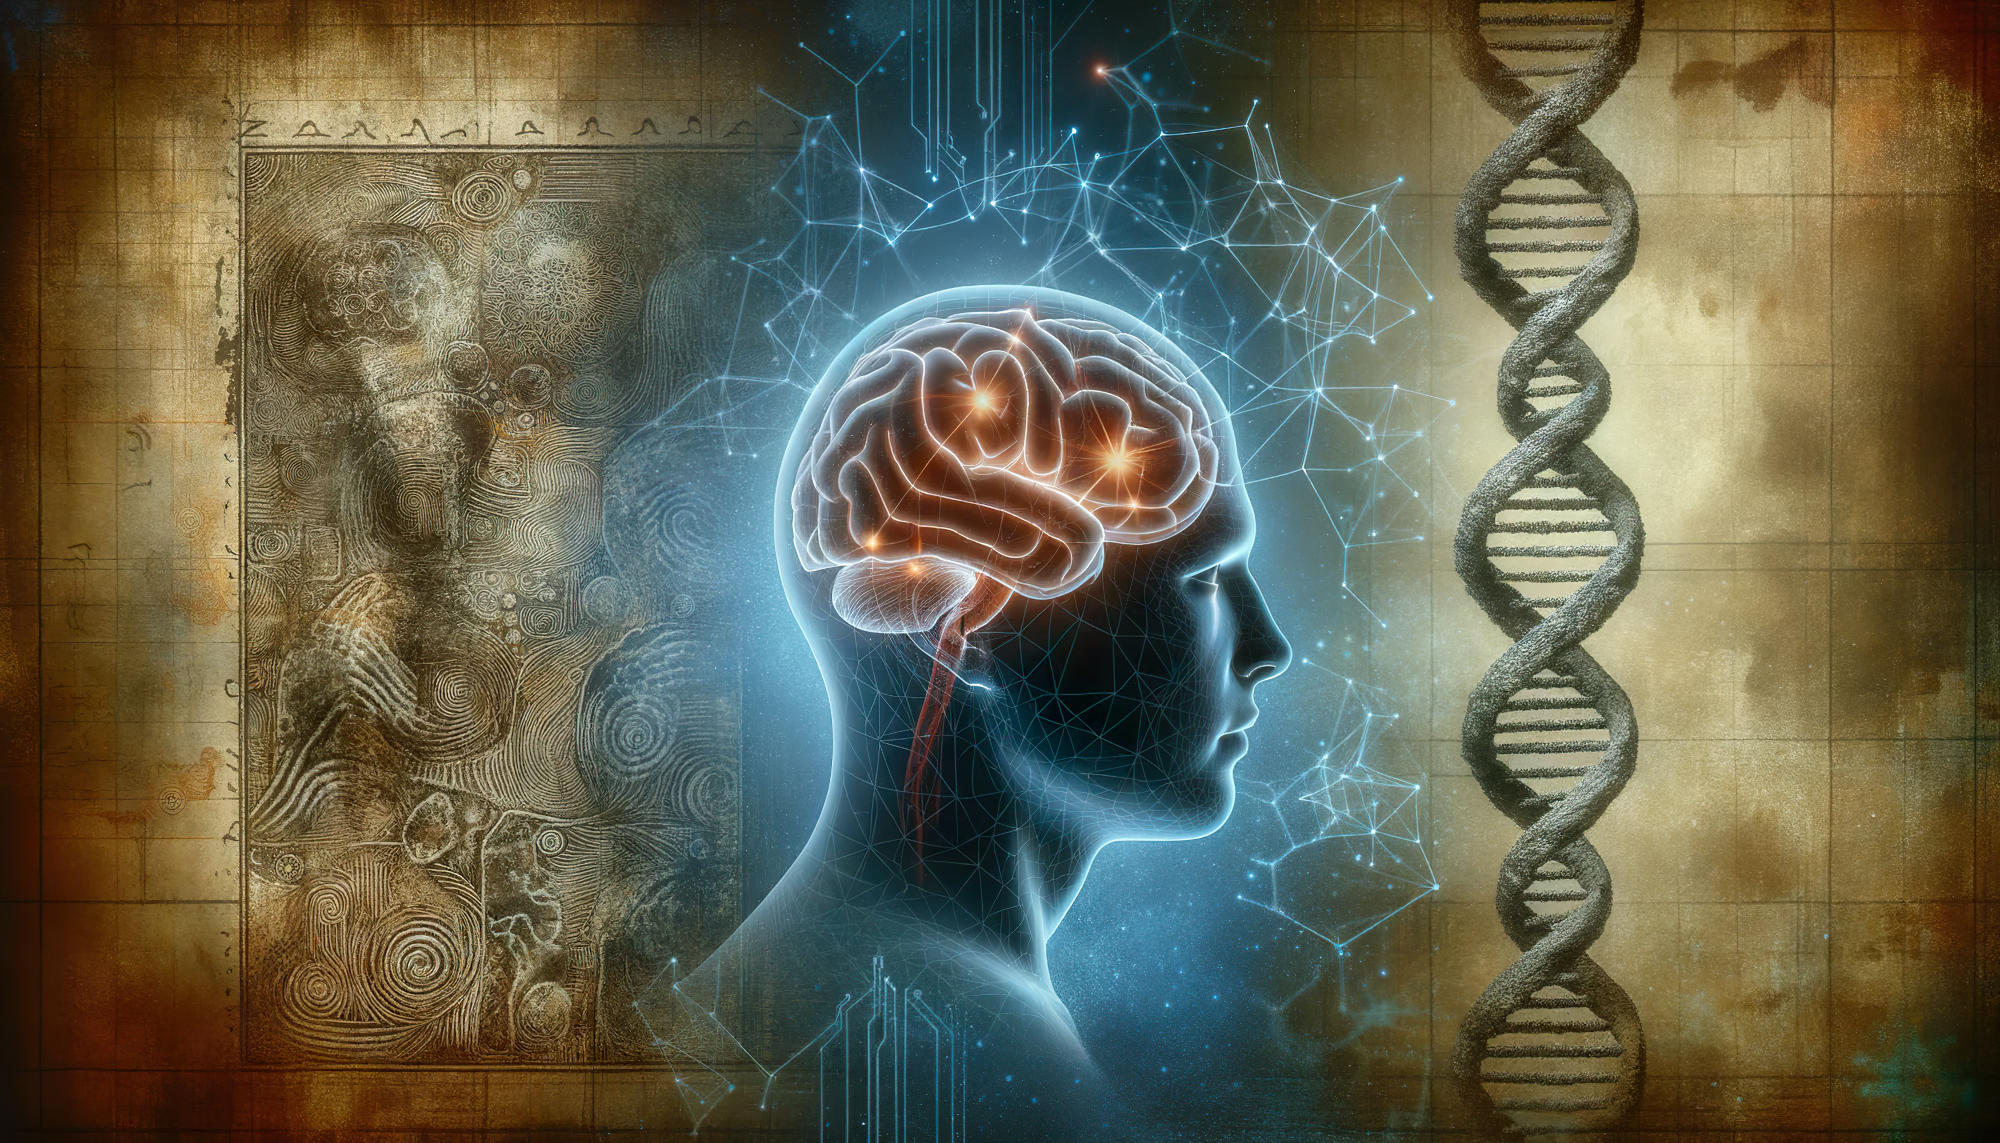 ADN-ul antic din Denisovan ar putea crește riscul oamenilor moderni de a dezvolta tulburări de sănătate mintală, cum ar fi depresia